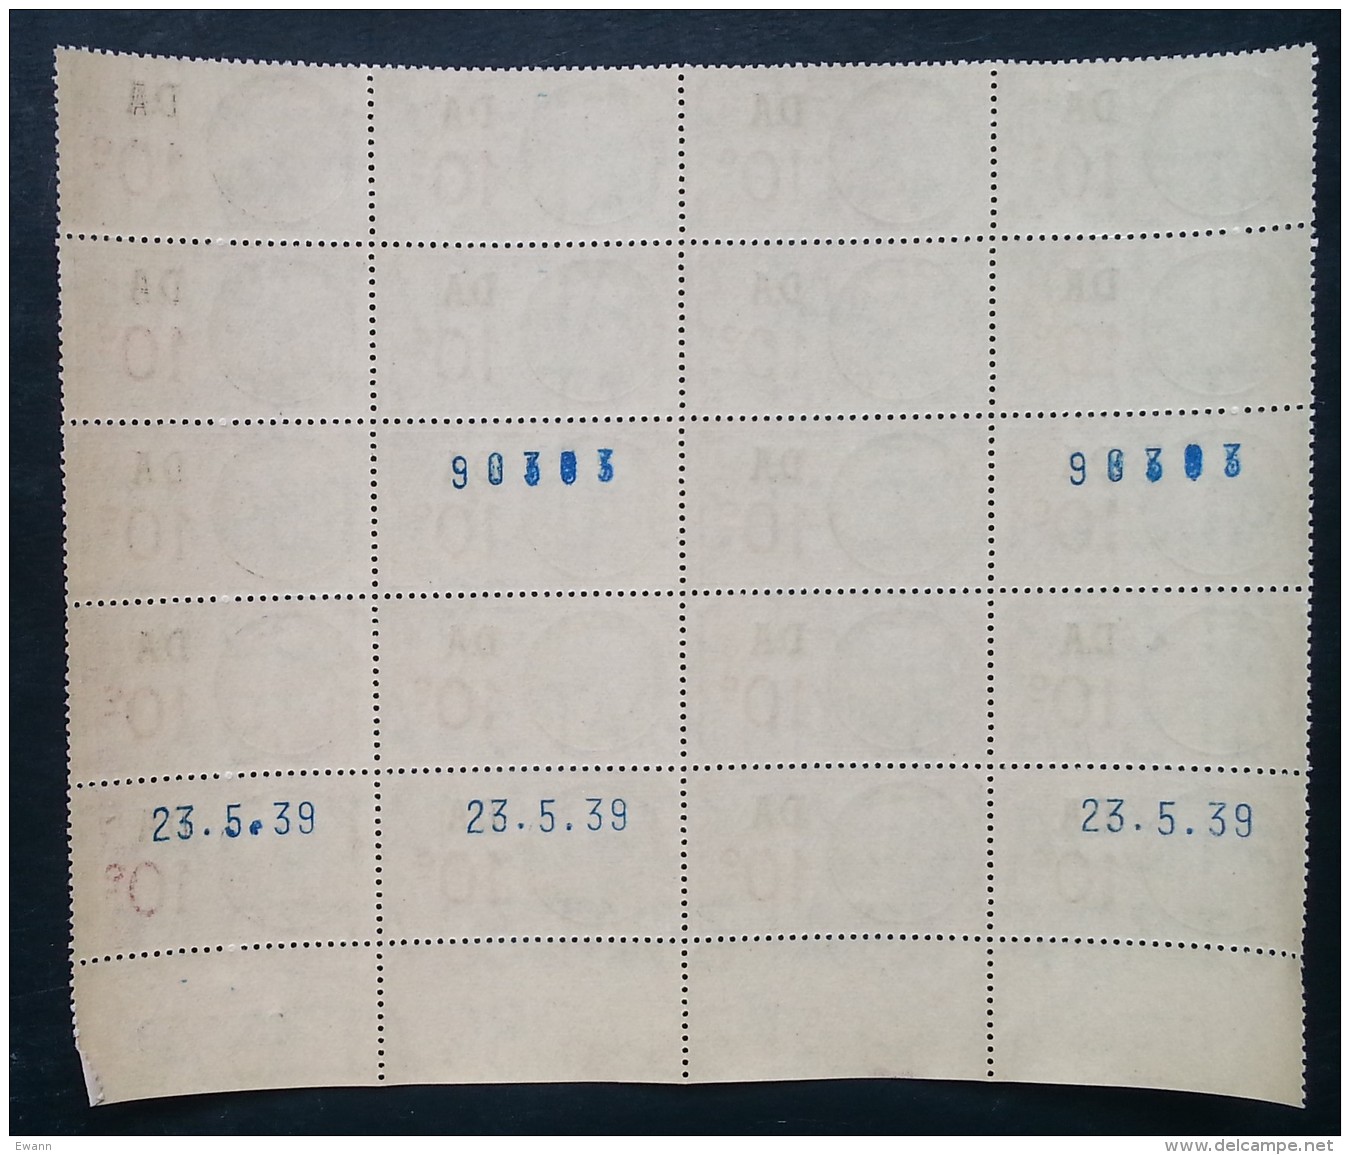 Planche 20 Timbres Fiscaux - SURCHARGE DA 10c - Coin Daté 23.5.1939 - Neufs - Stamps